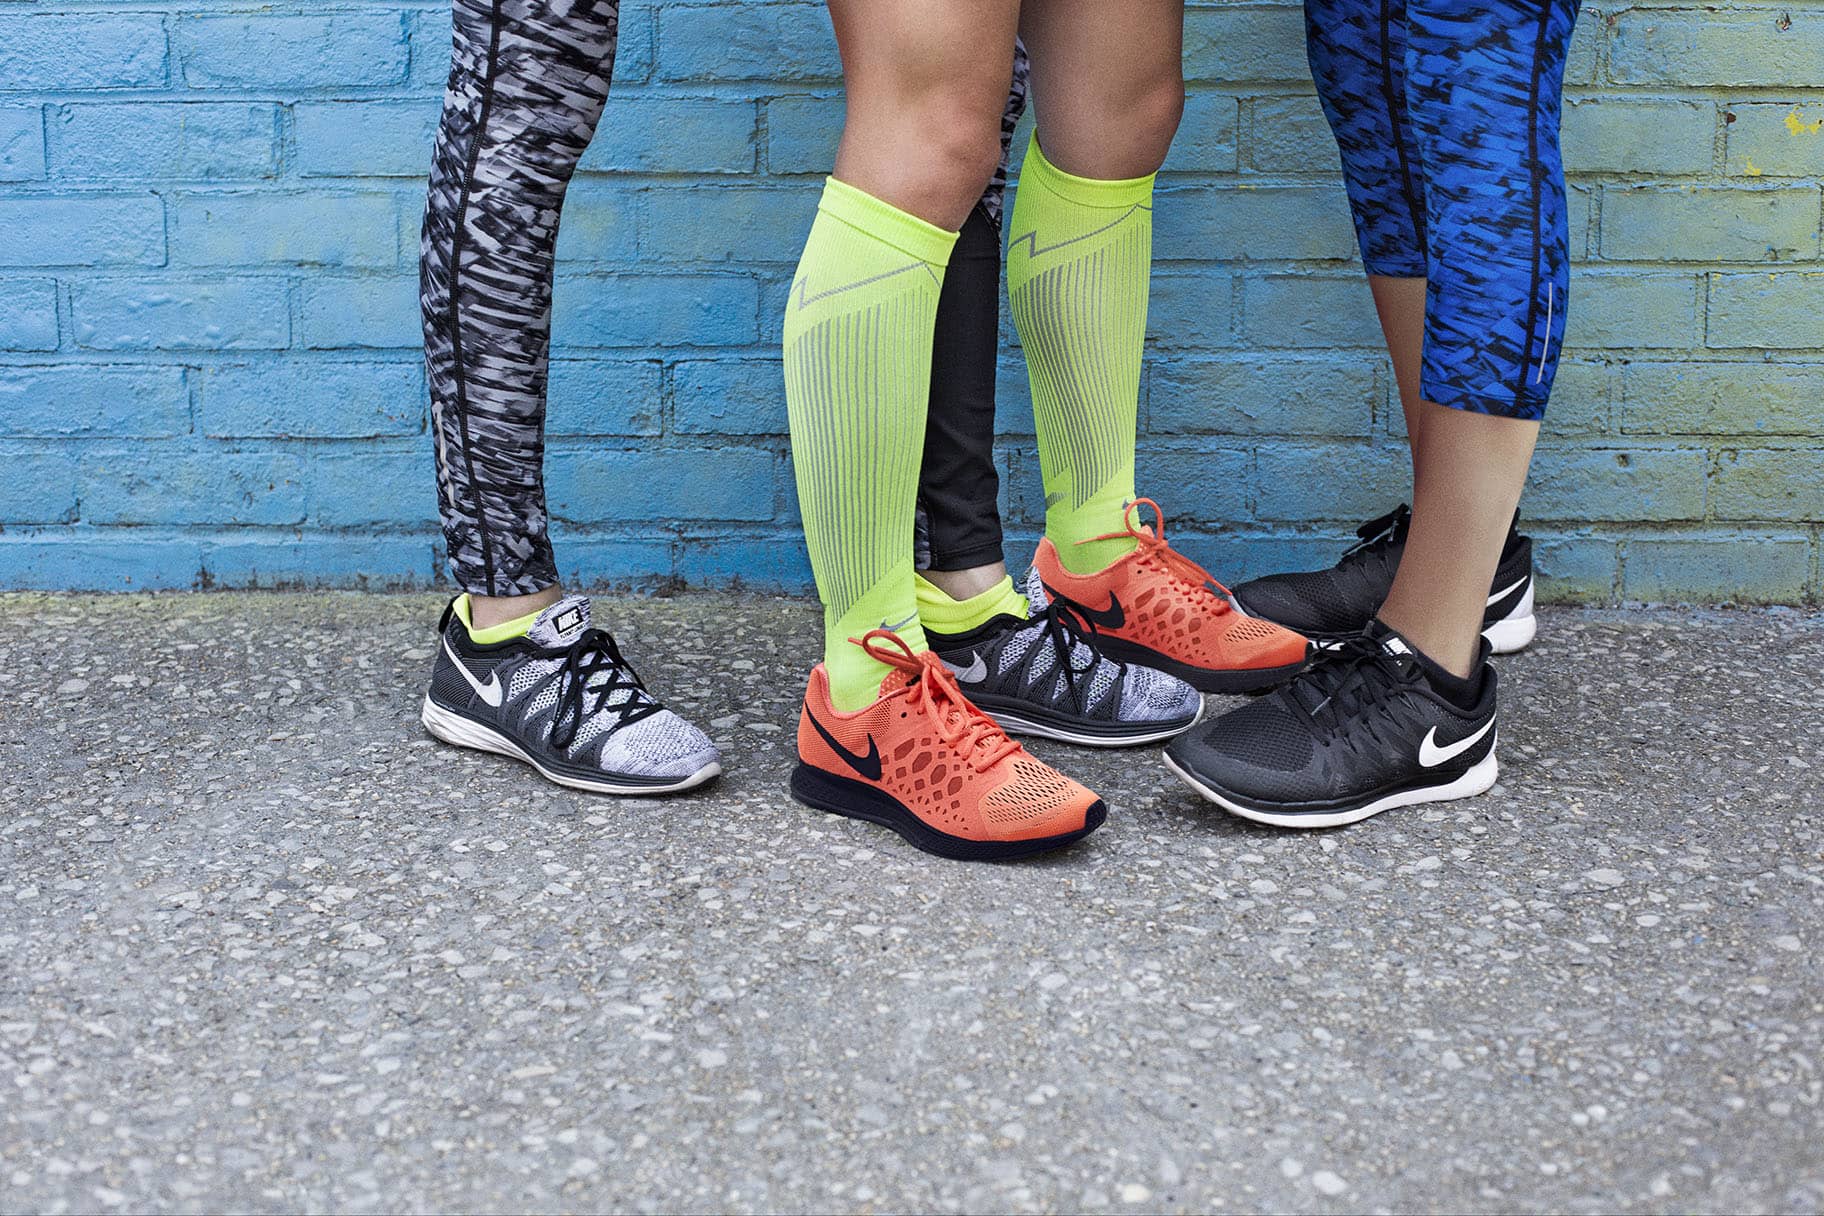 Come scegliere le calze a compressione ideali per il running